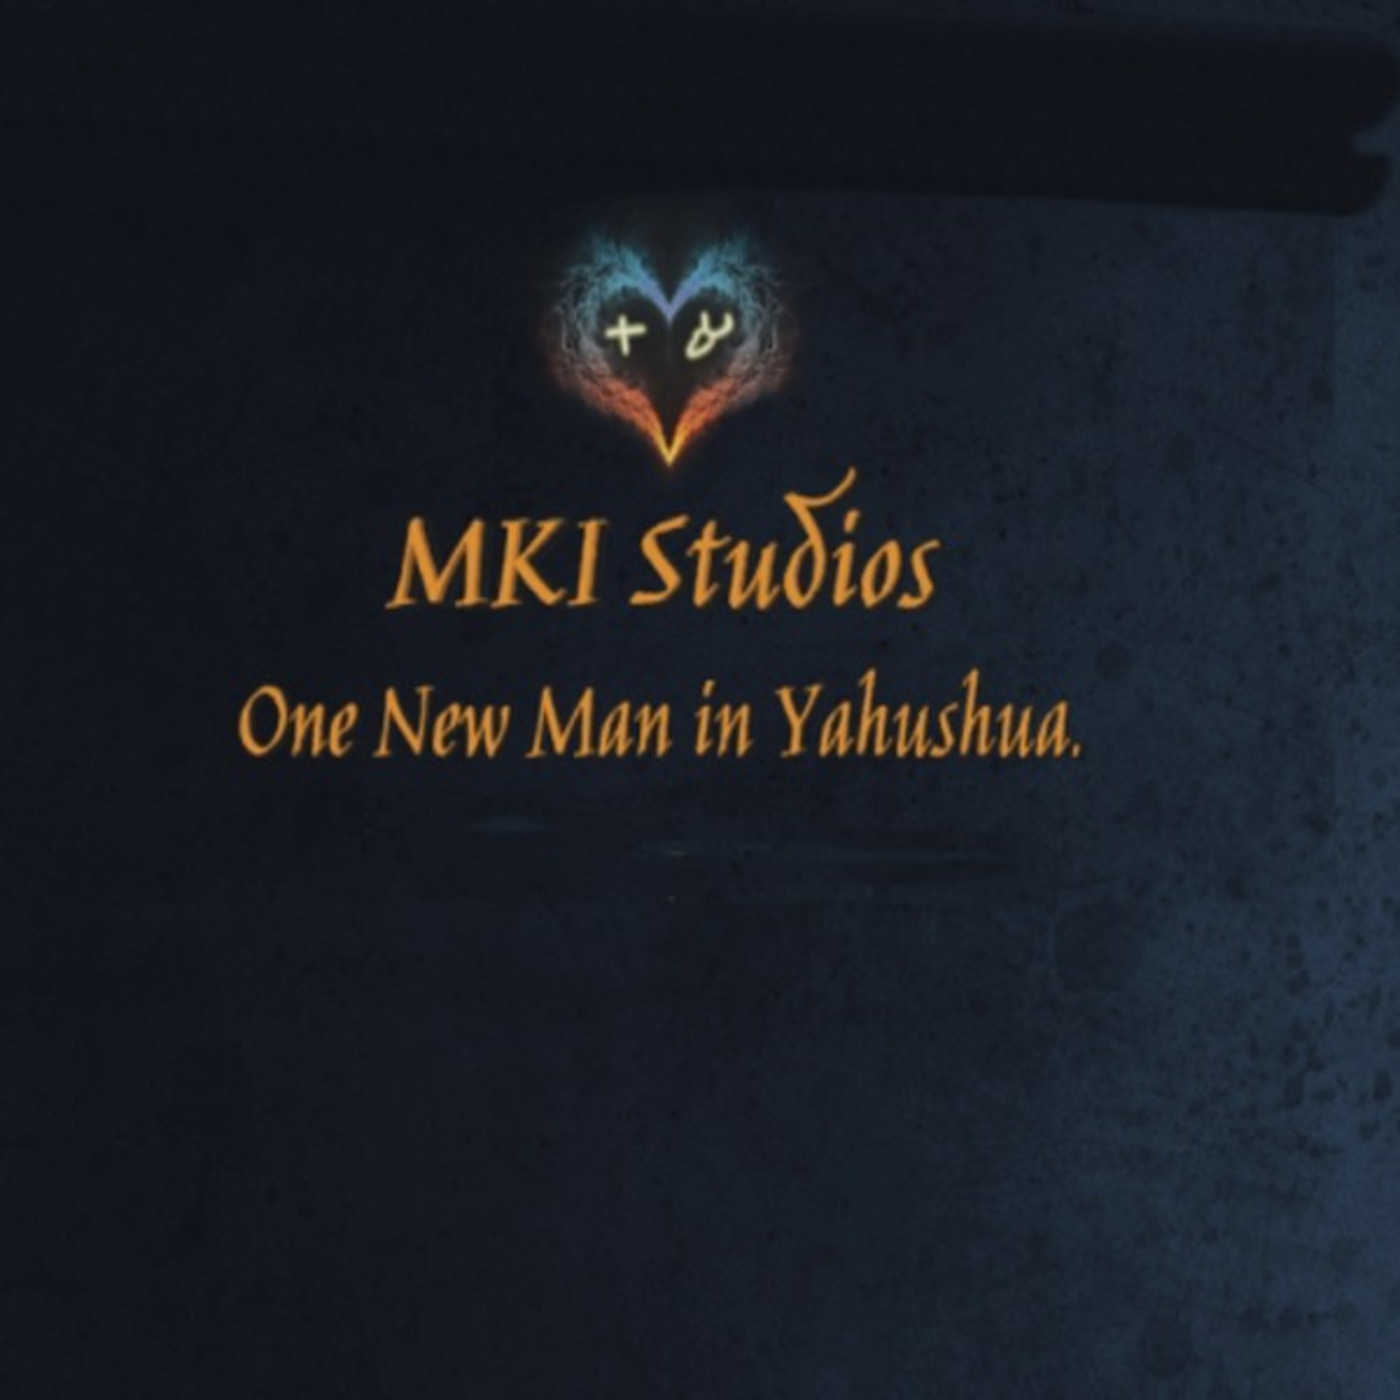 MKI Studios